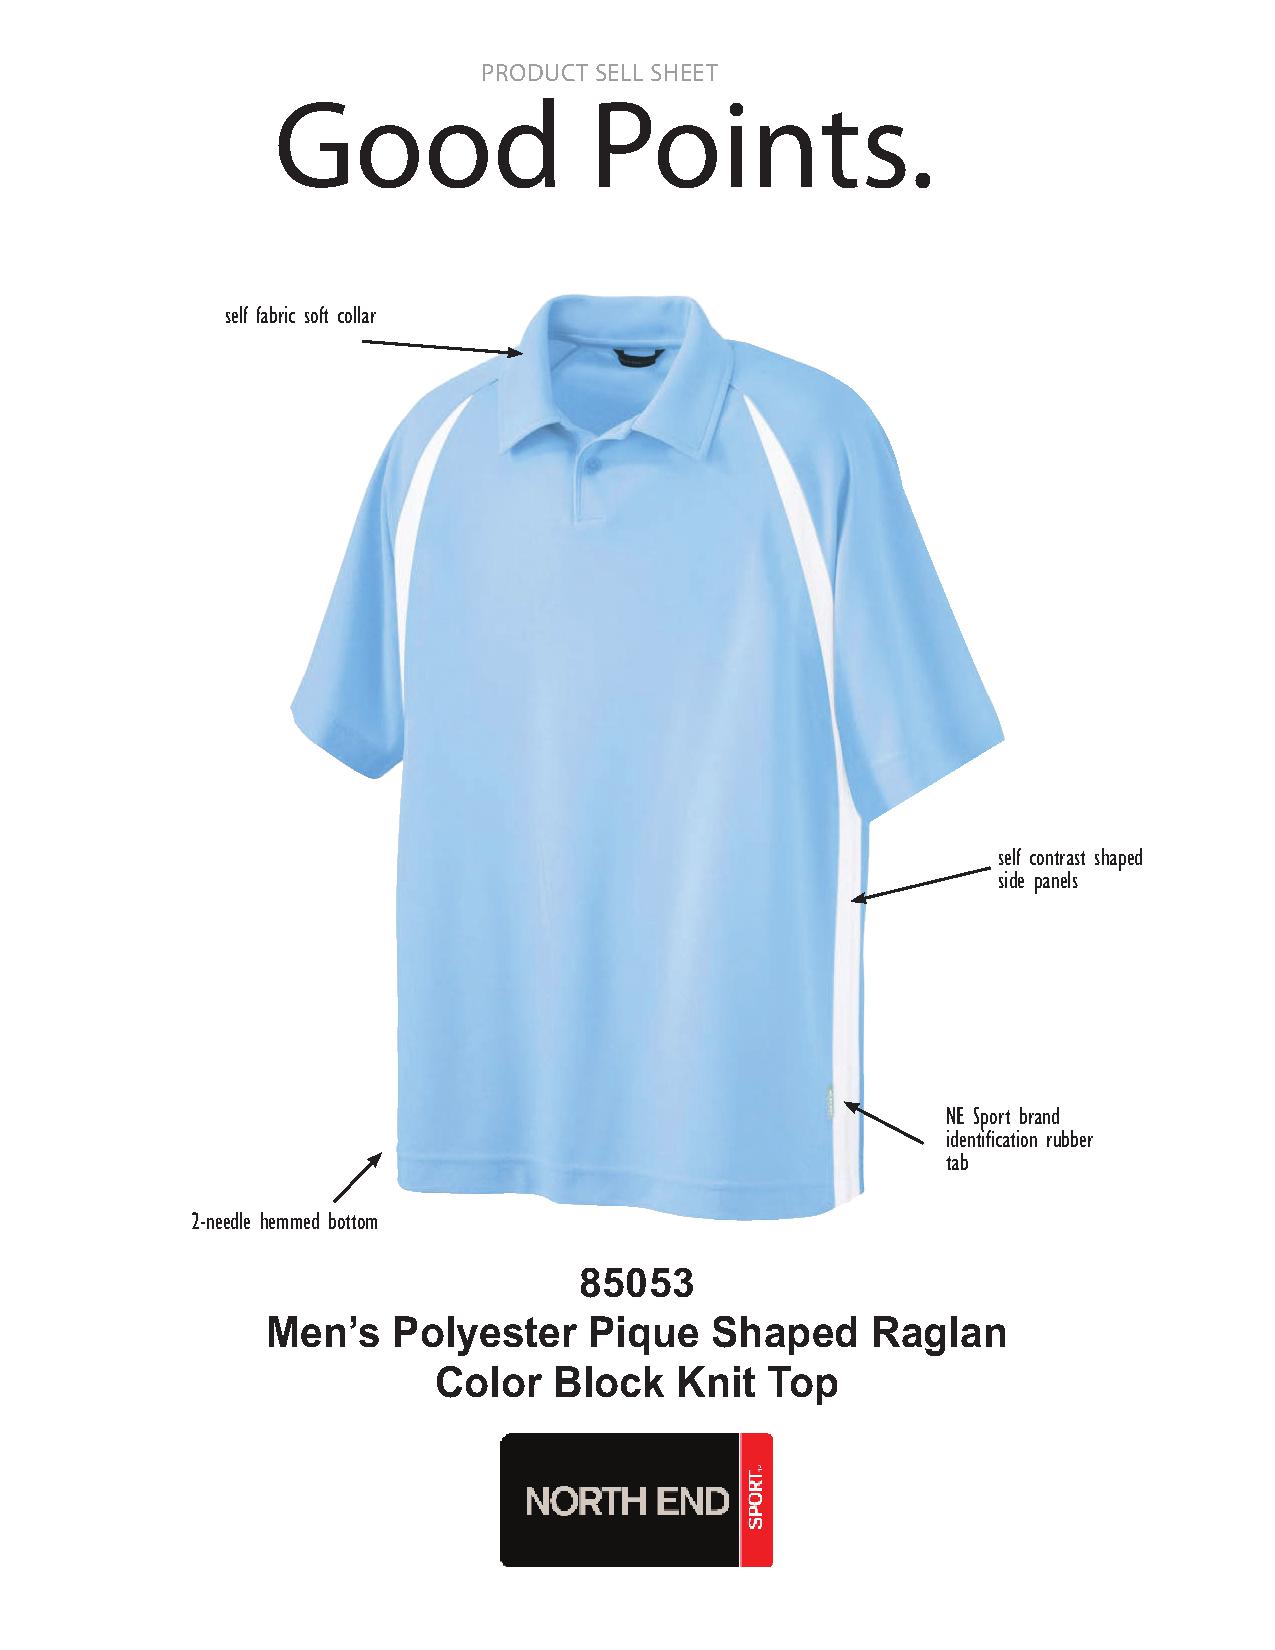 Ash City Pique 85053 - Men's Ployester Pique Shaped Ranlan Color-Block Polo